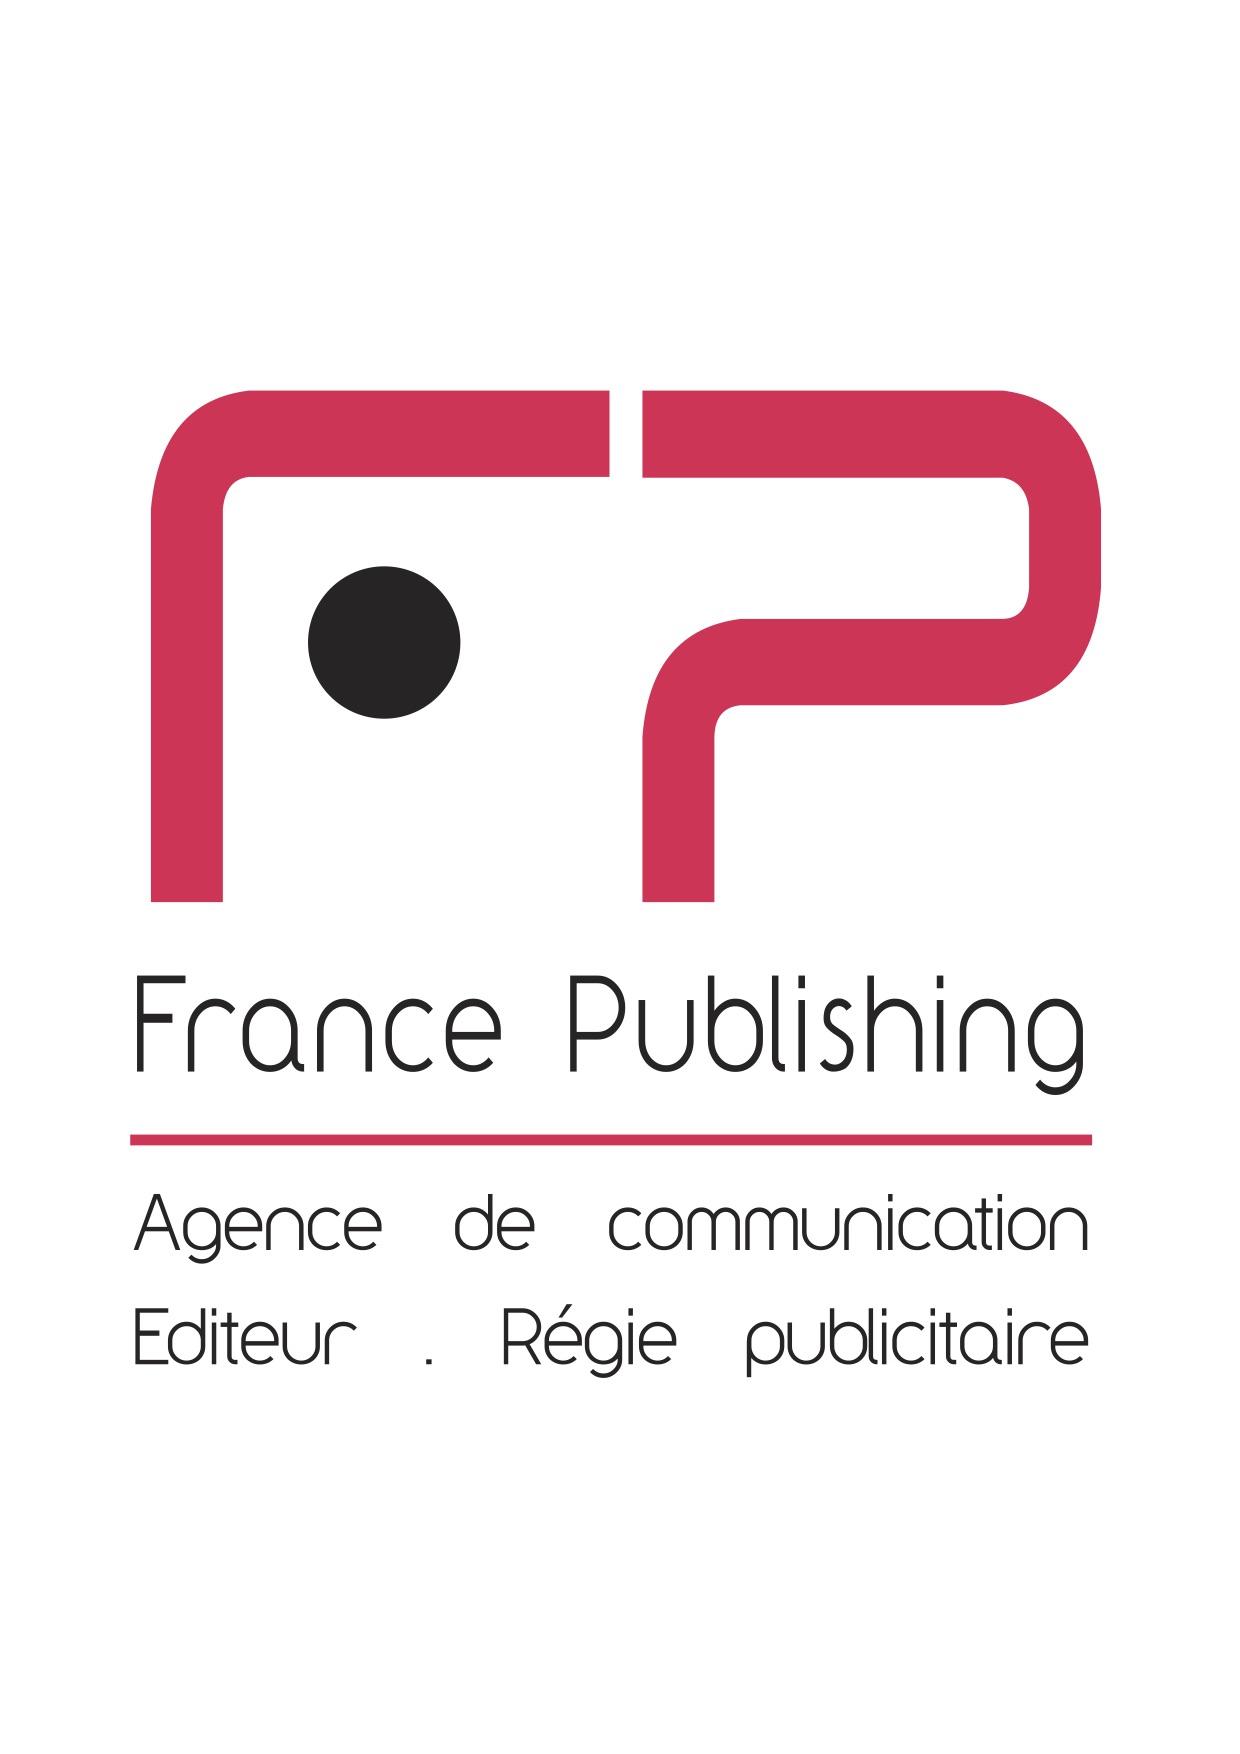 France publishing